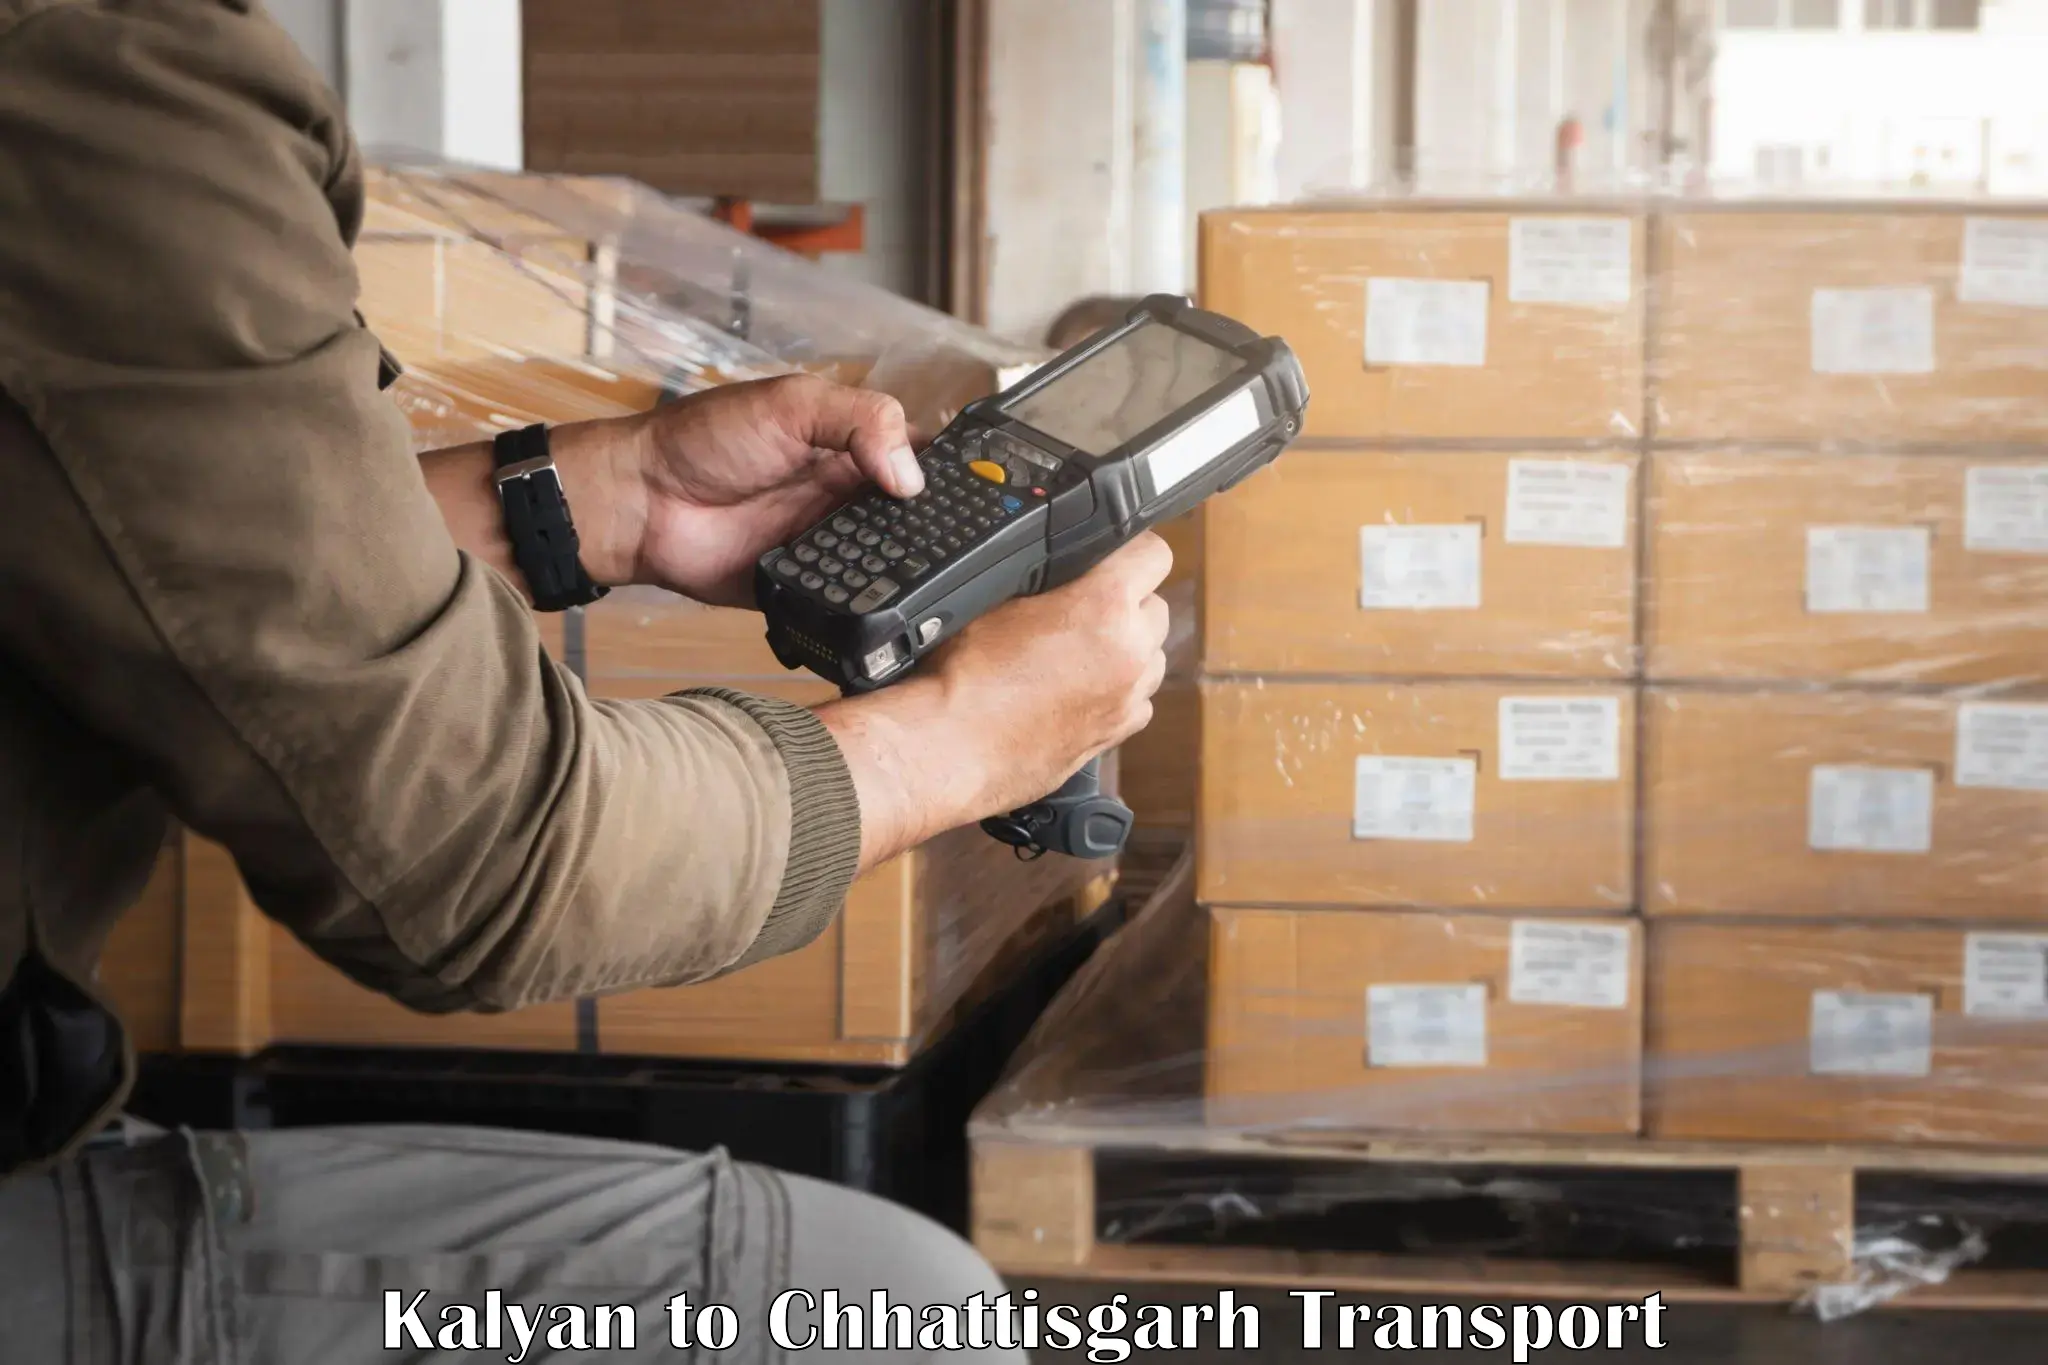 Online transport service Kalyan to Mahasamund